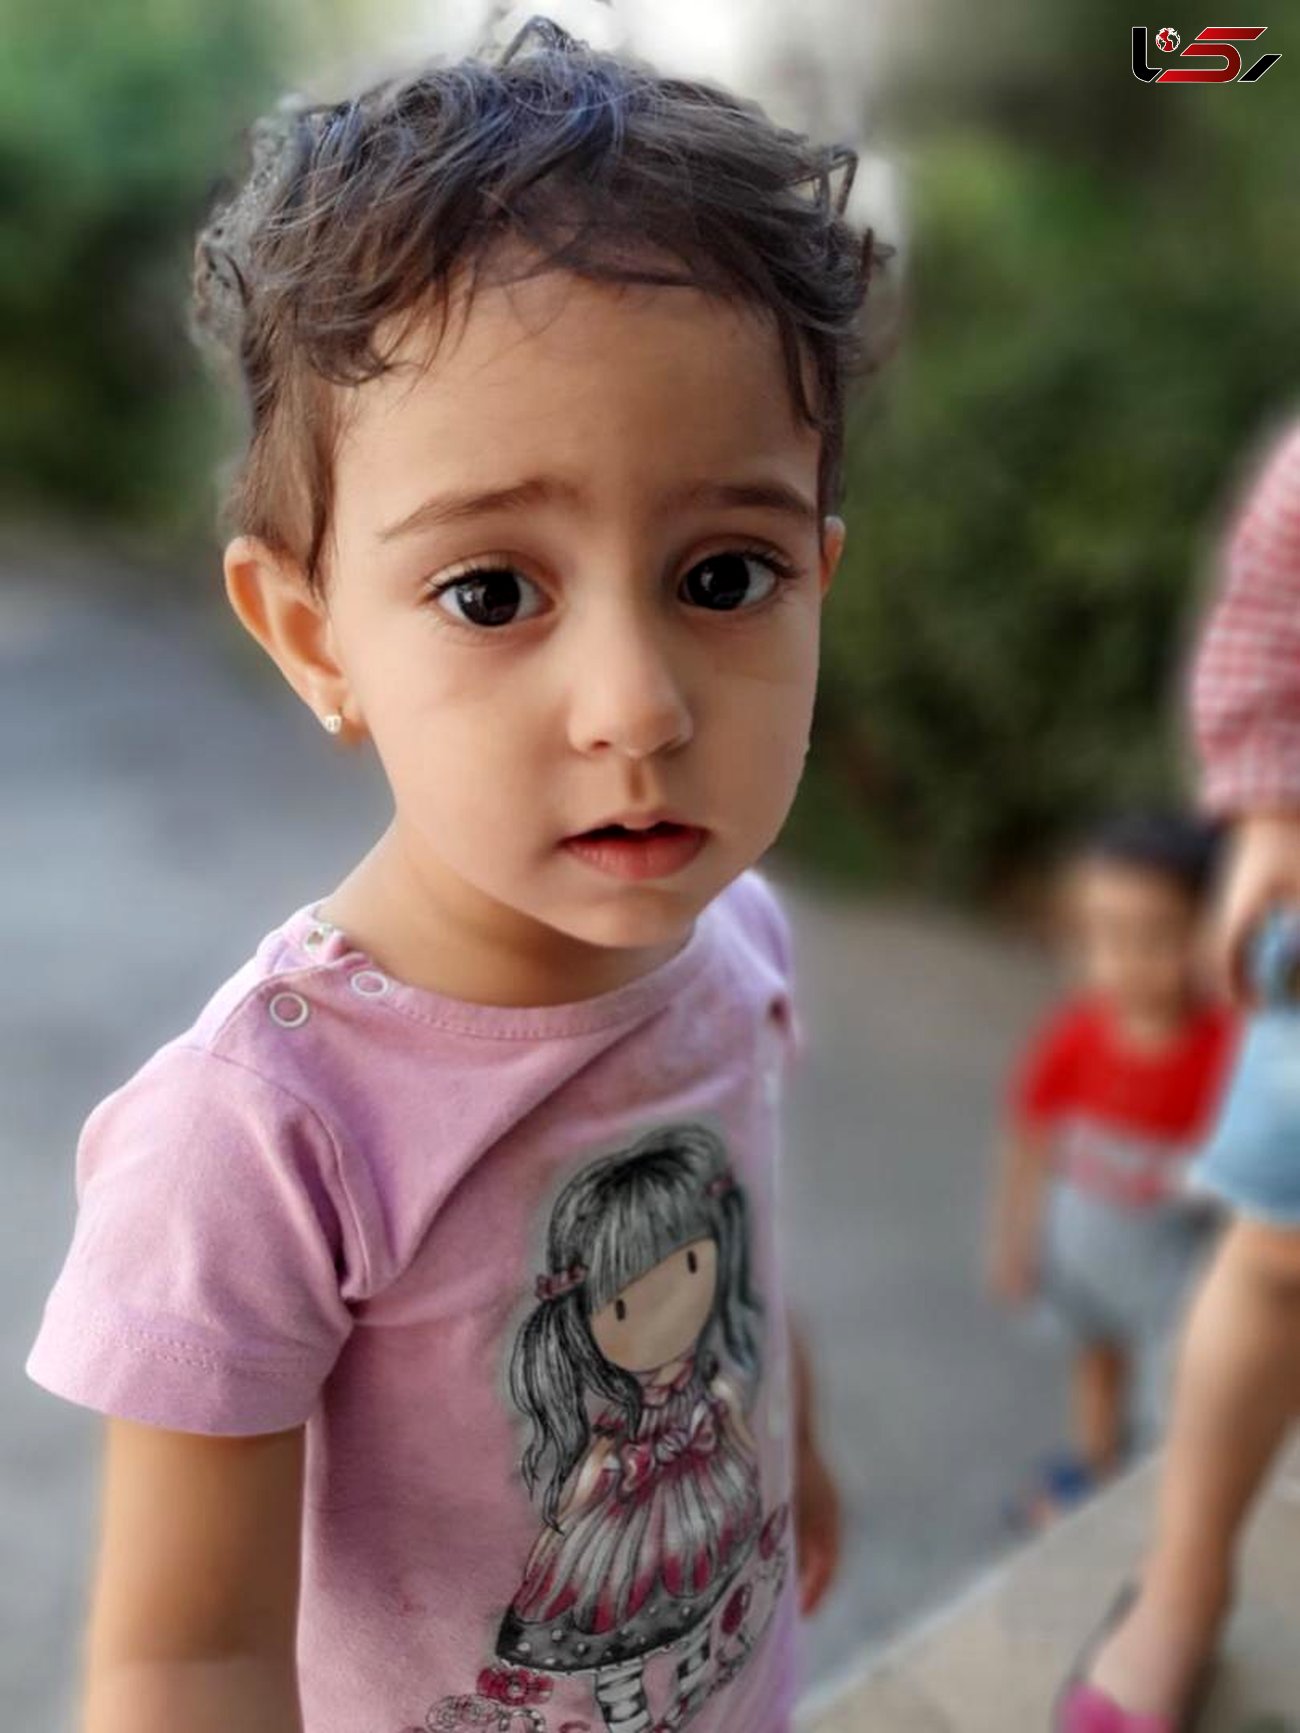 زهرا 2 ساله در جنوب تهران گم شد! / او را دیدید به پلیس خبر دهید! + عکس ها